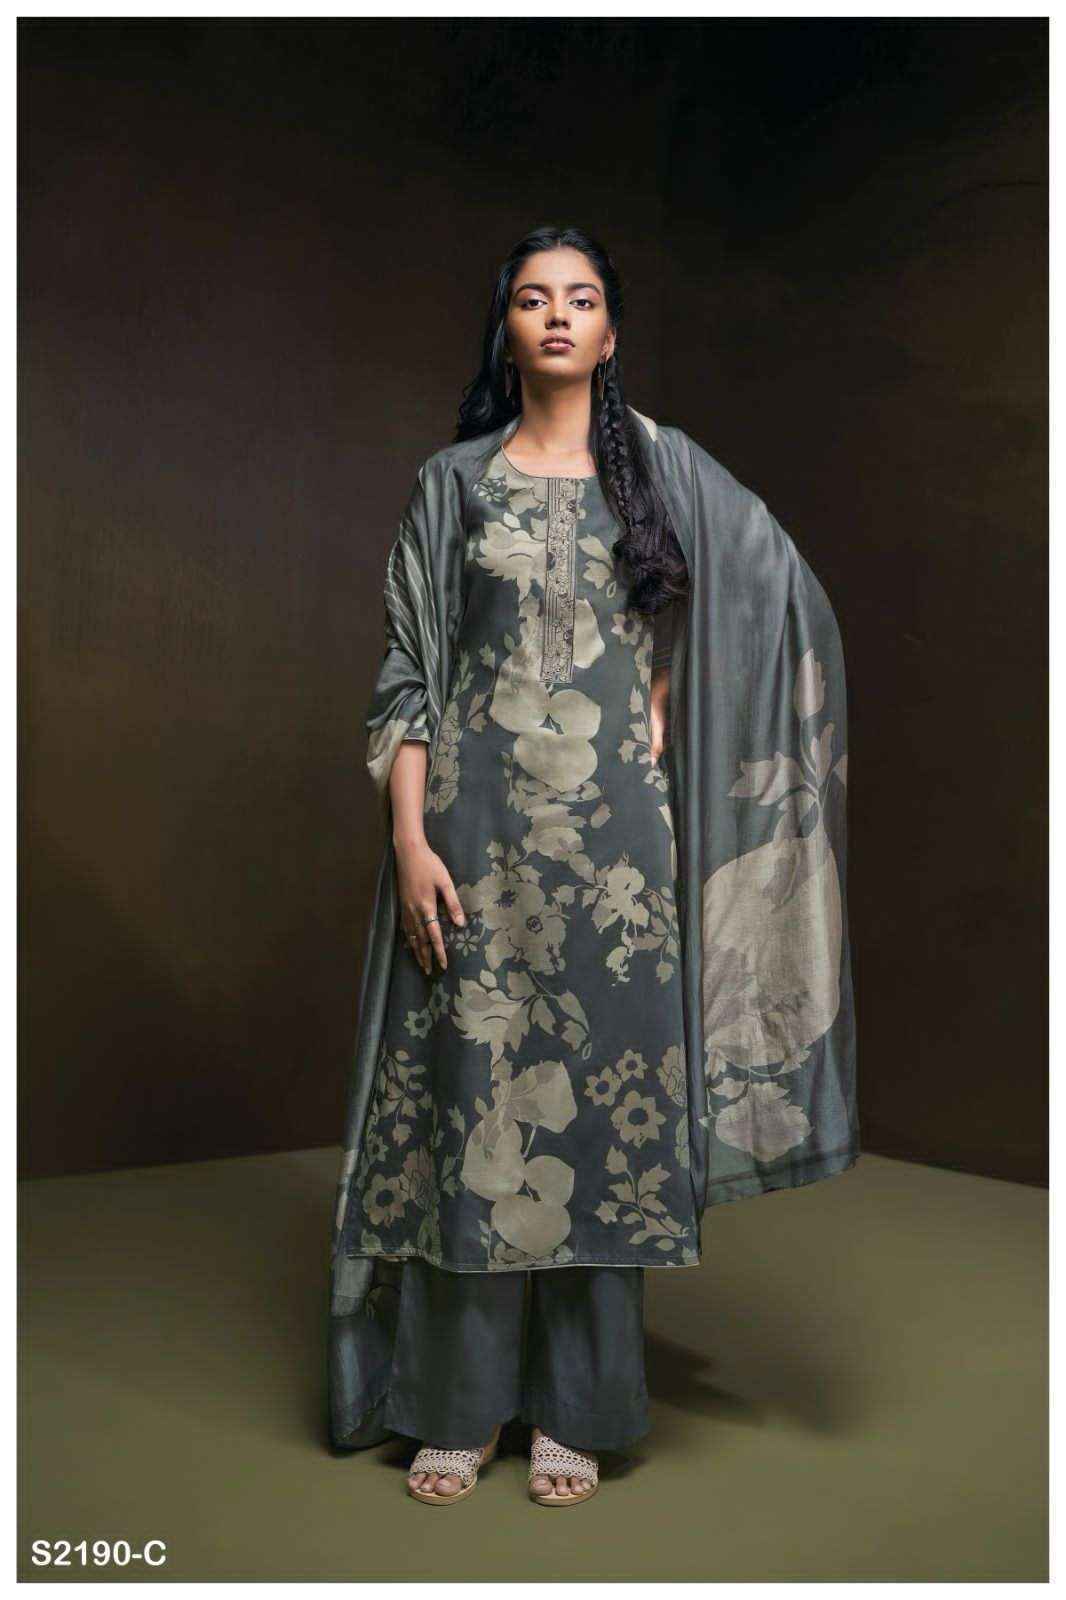 Ganga Finn 2190 Cotton Dress Material 4 pcs Catalogue